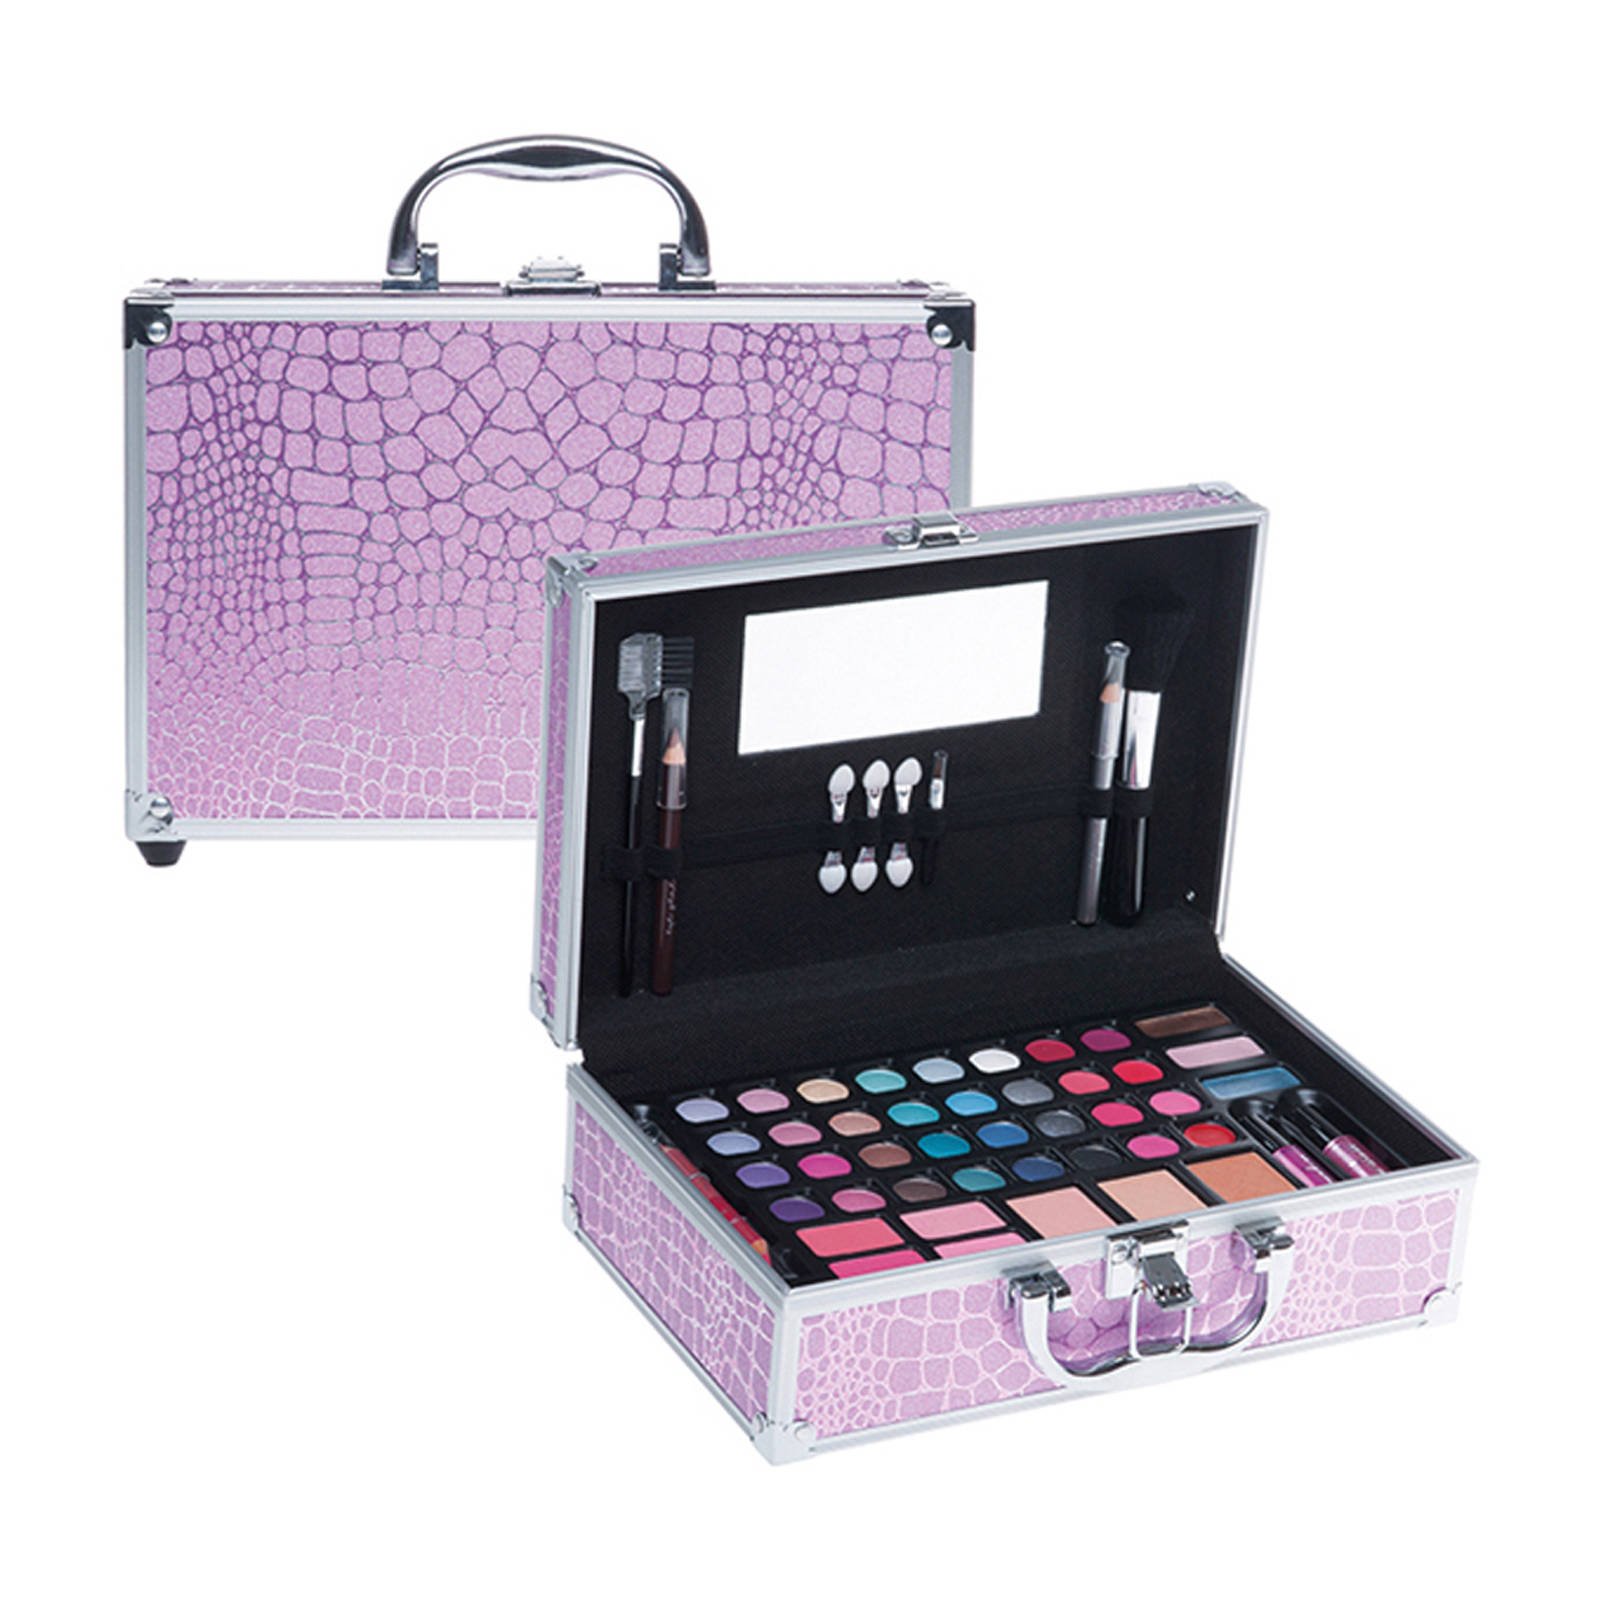 Outlook leef ermee Luchtvaartmaatschappijen Casuelle make-up koffer roze - Meubelmooi.nl